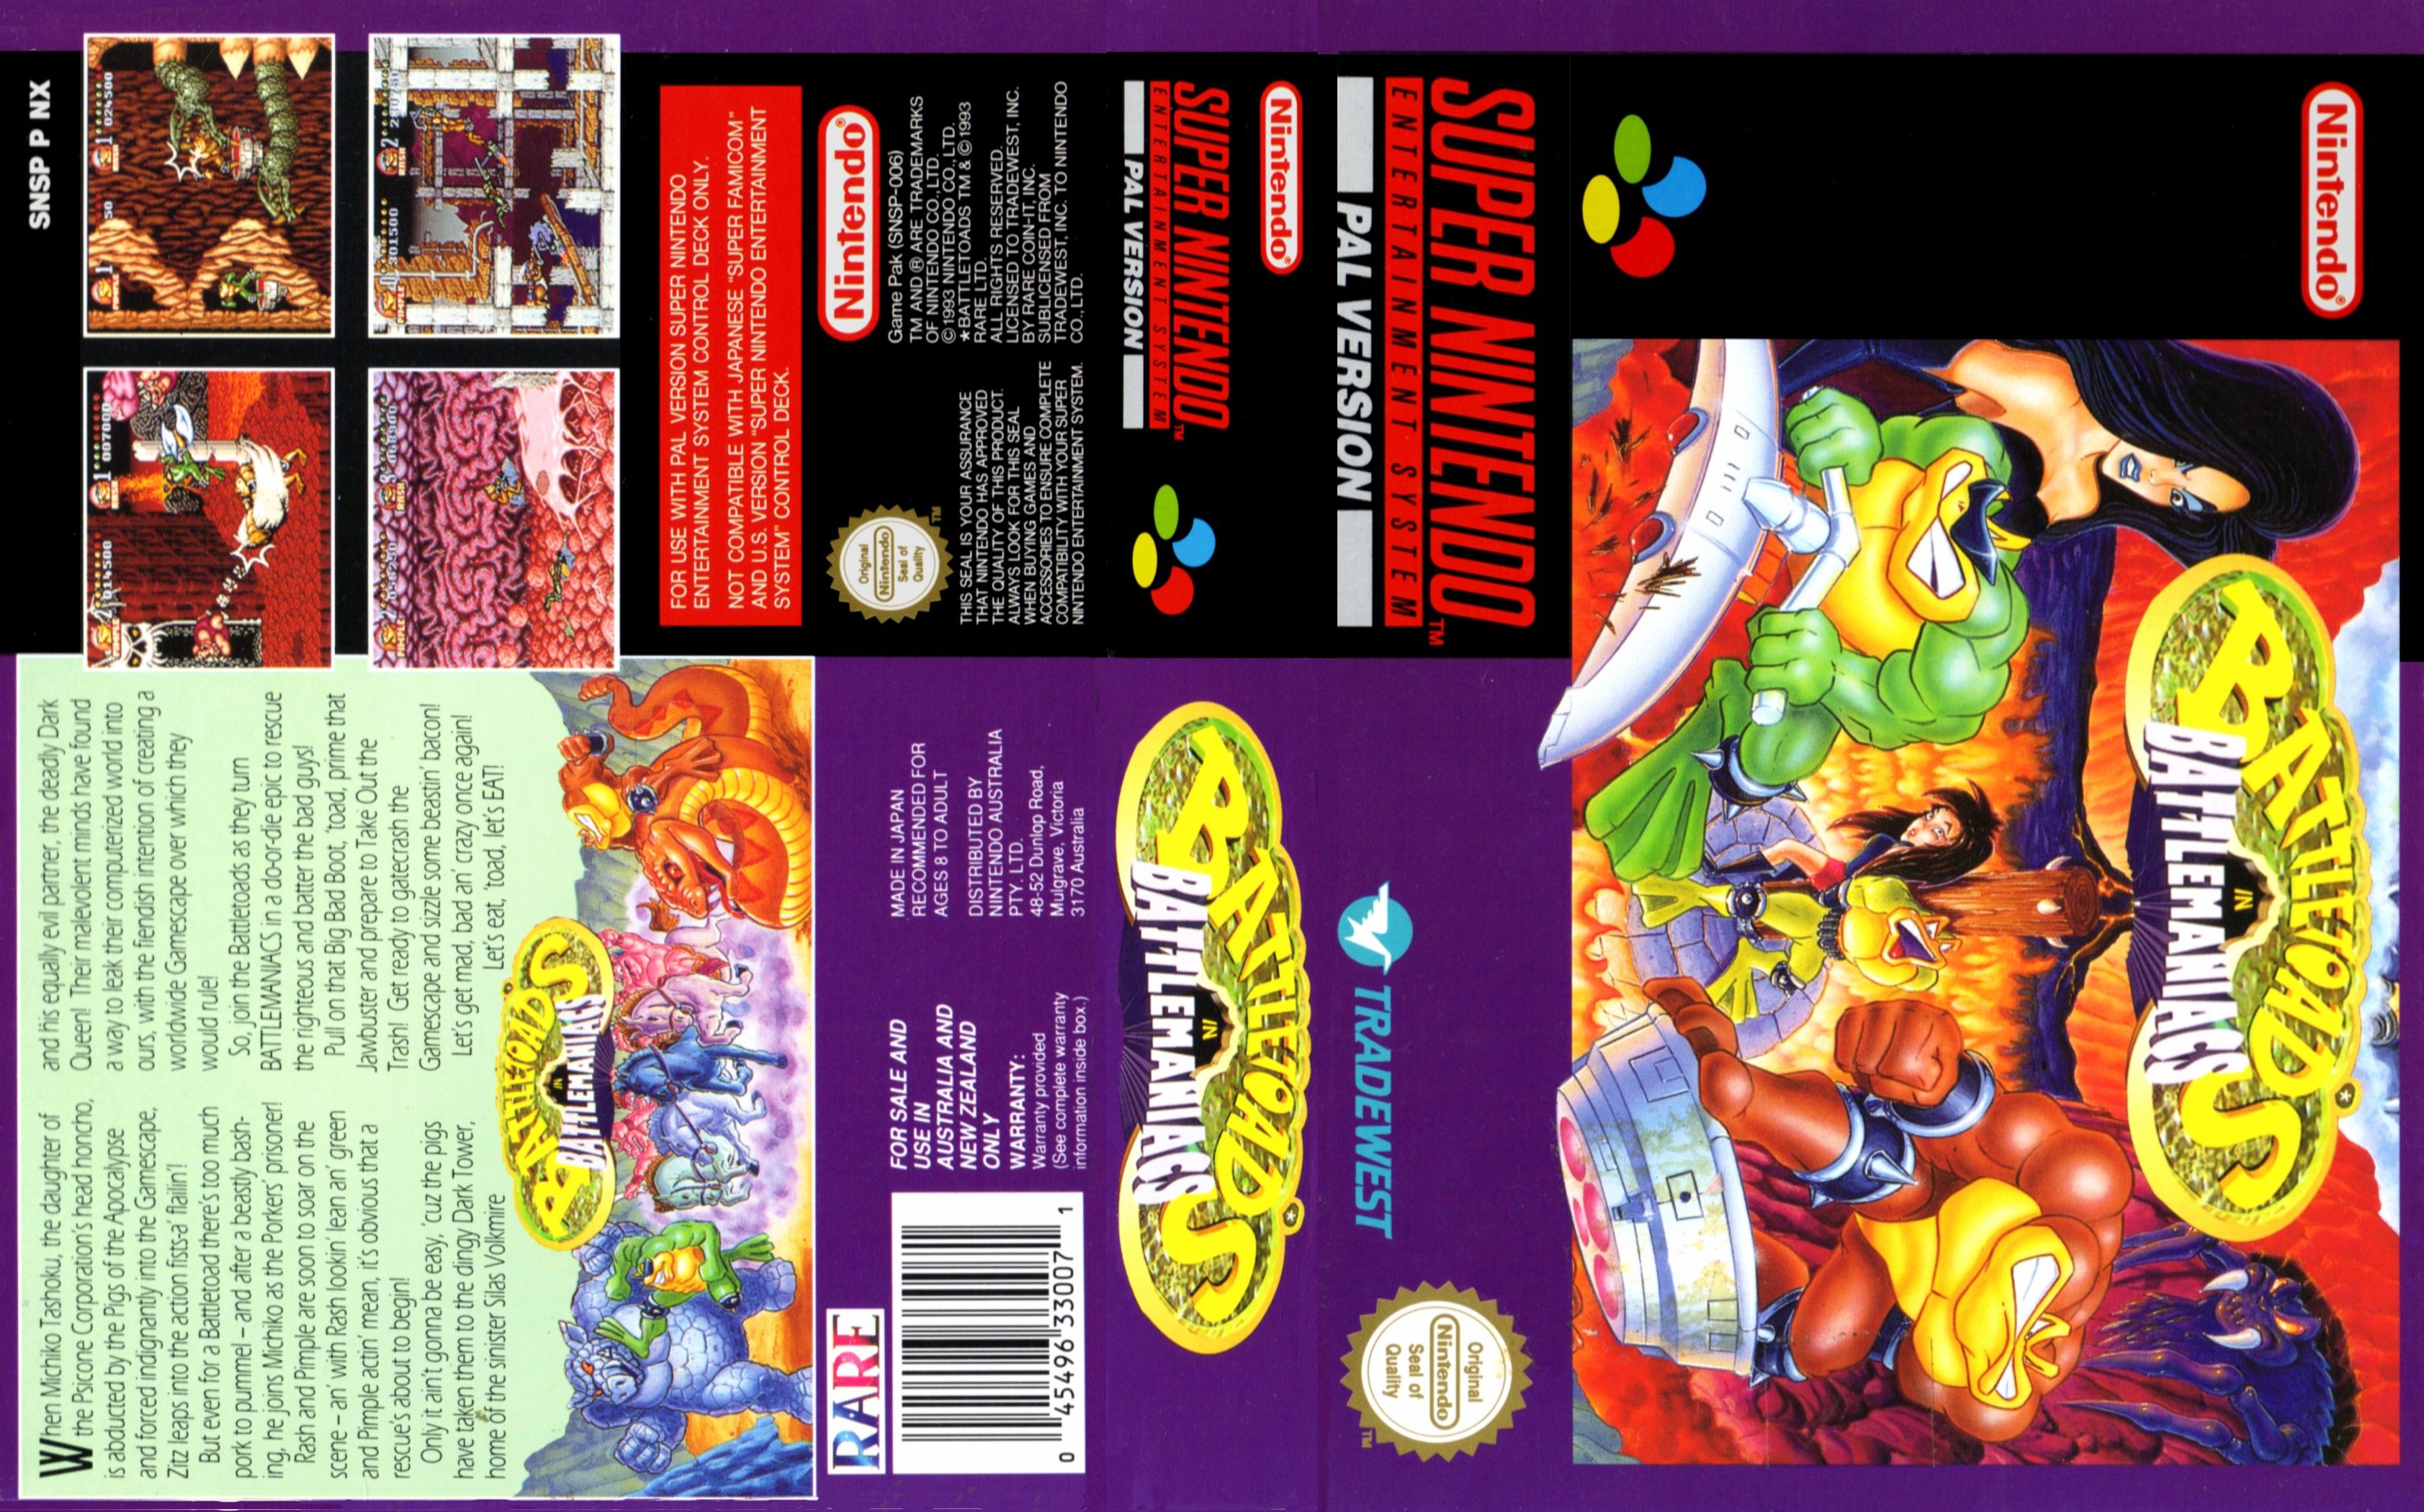 Battletoads snes. Battletoads in Battlemaniacs super Nintendo обложка. Battletoads in Battlemaniacs на super Nintendo Entertainment System. Battletoads Famicom. Battletoads обложка Famicom.